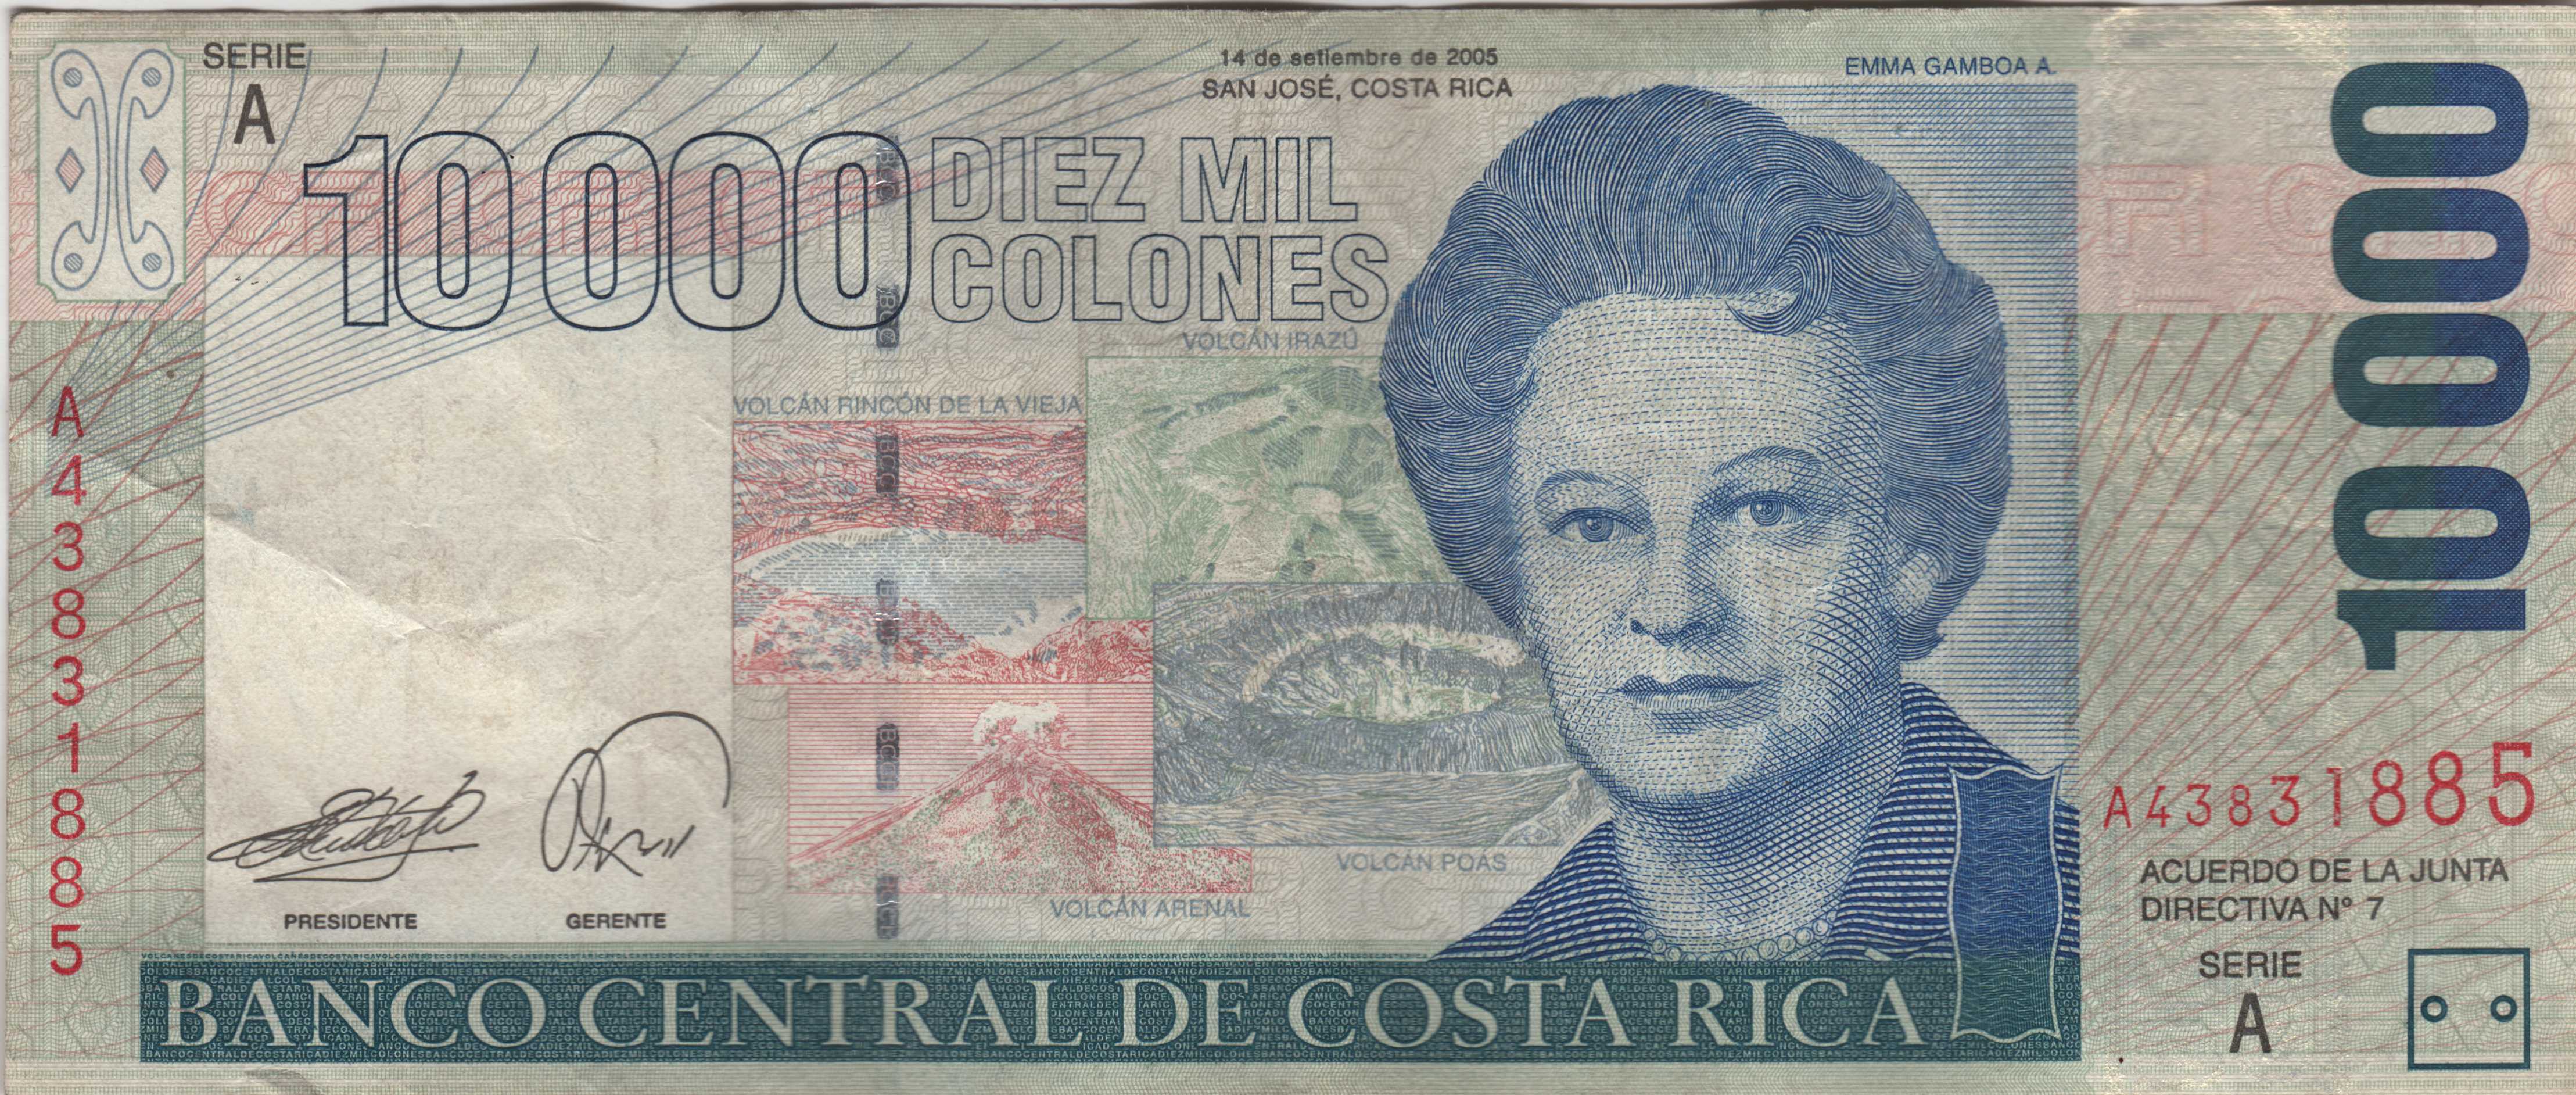 Billete de 10000 colones Costa Rica ANVERSO